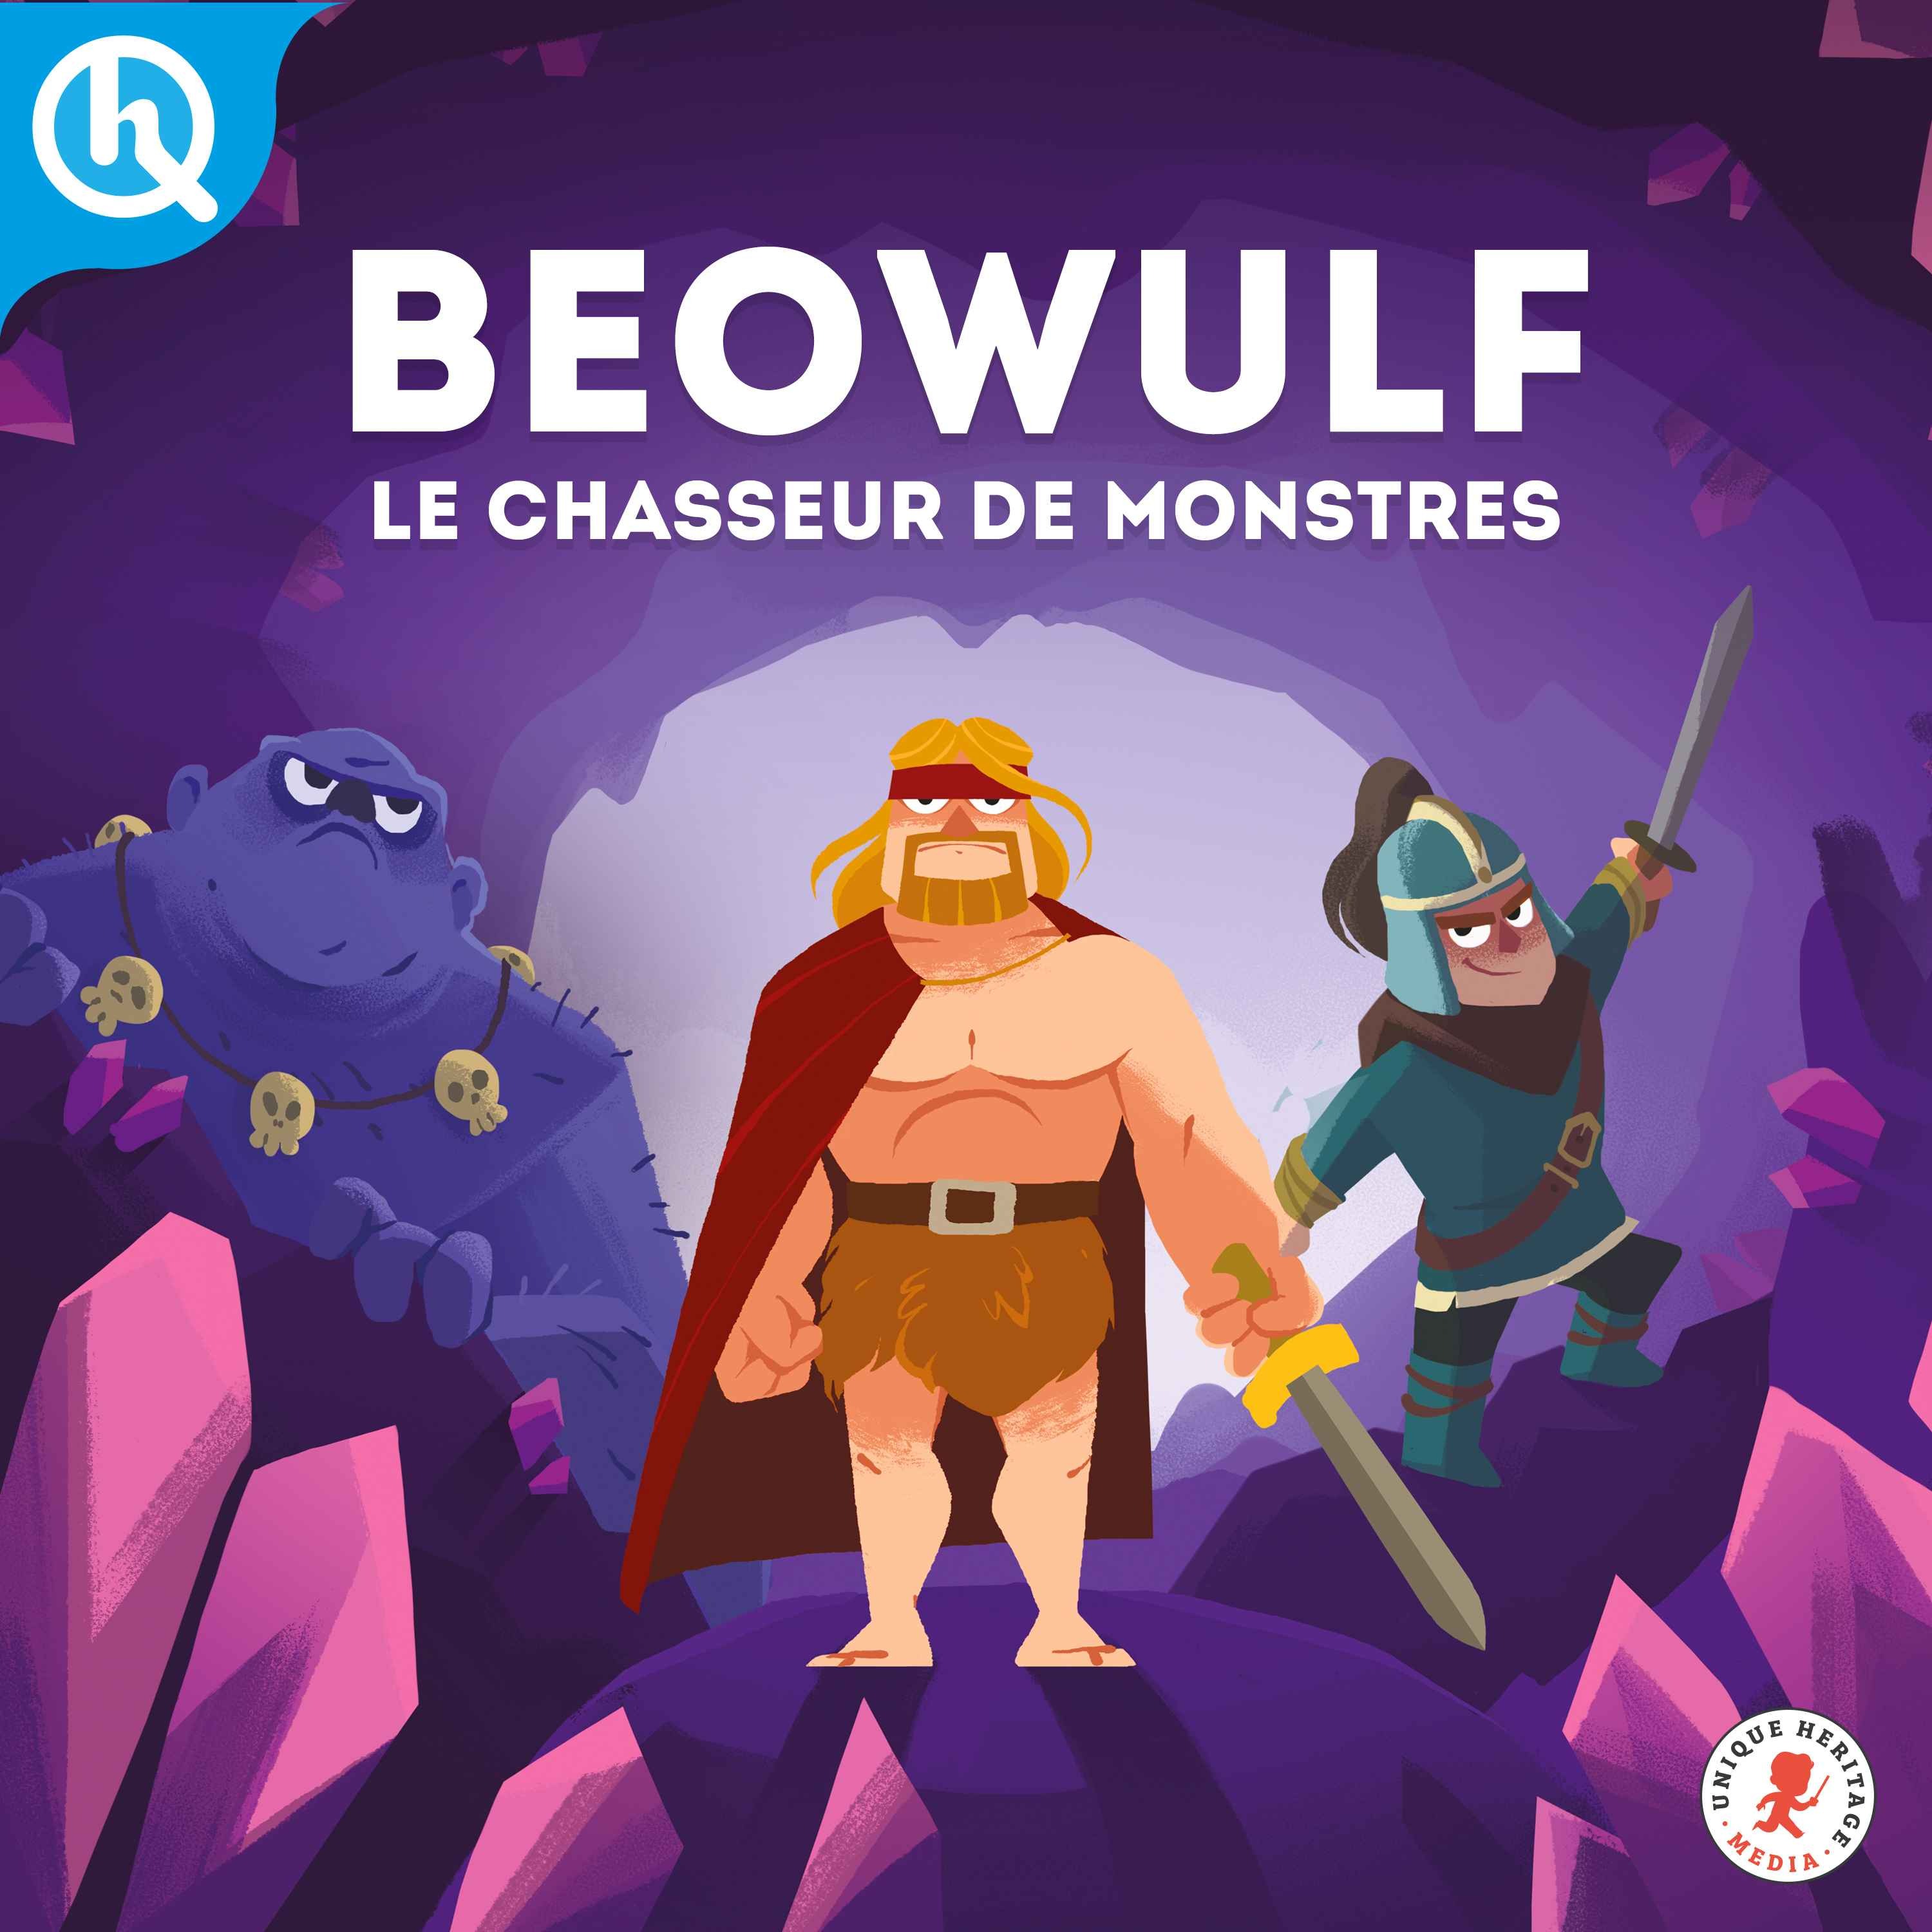 Beowulf, le chasseur de monstres